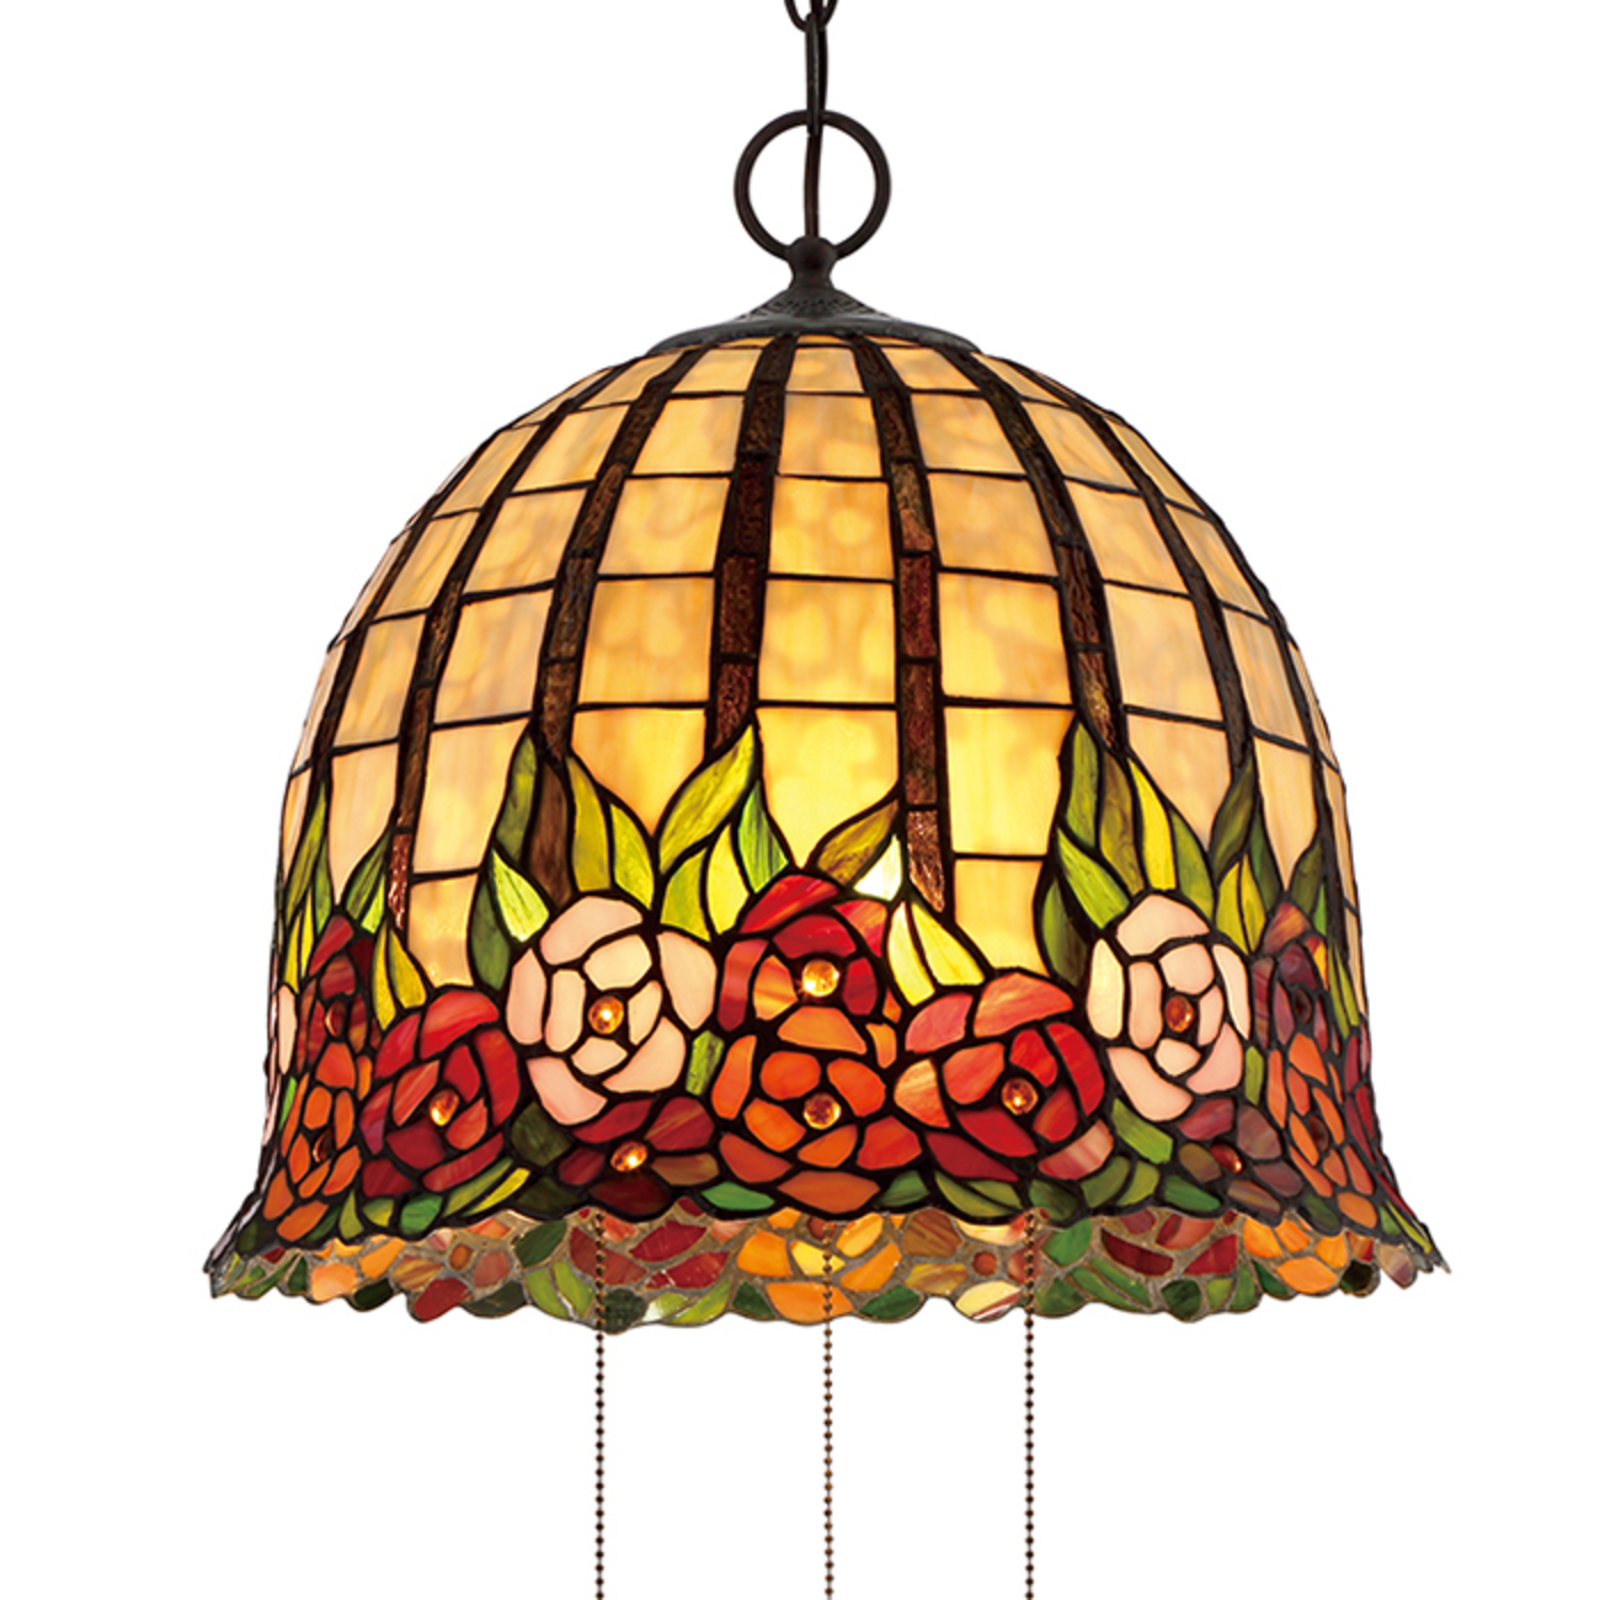 Kvetinová Tiffany závesná lampa Rosecliffe